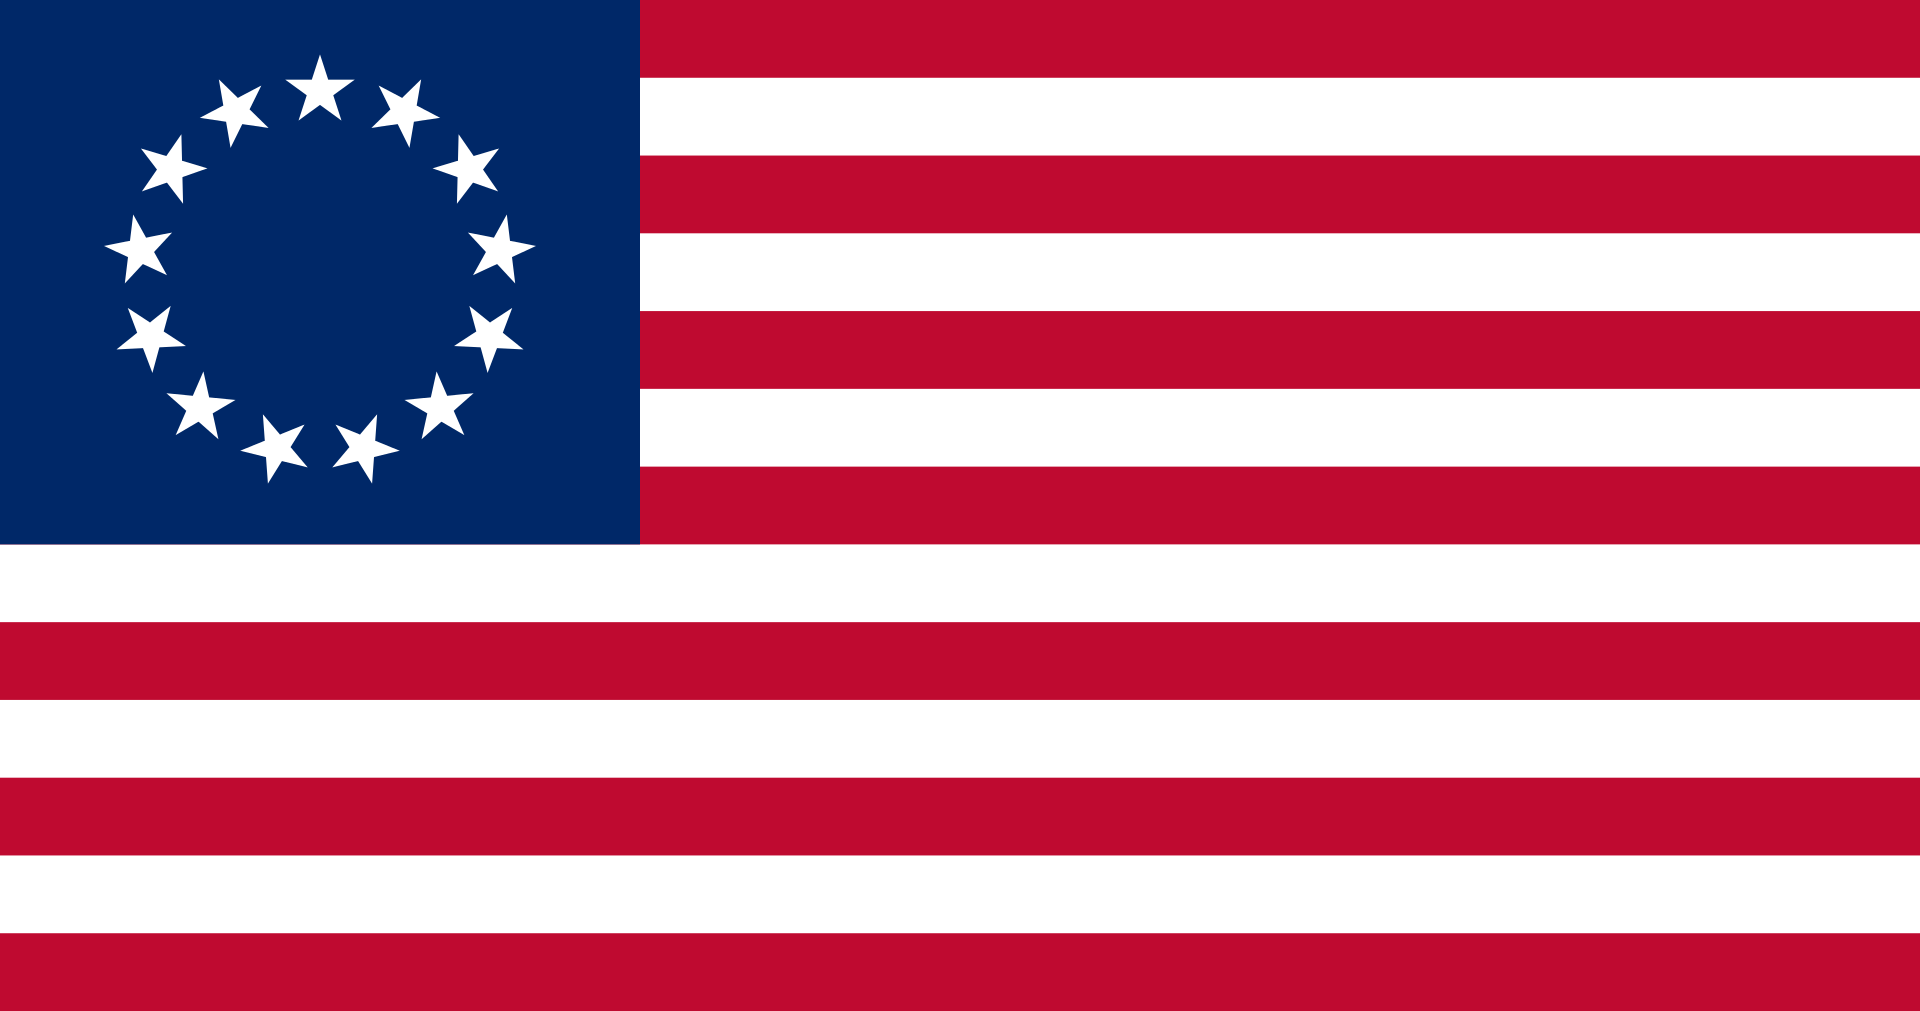 US_flag_13_stars_–_Betsy_Ross.svg_